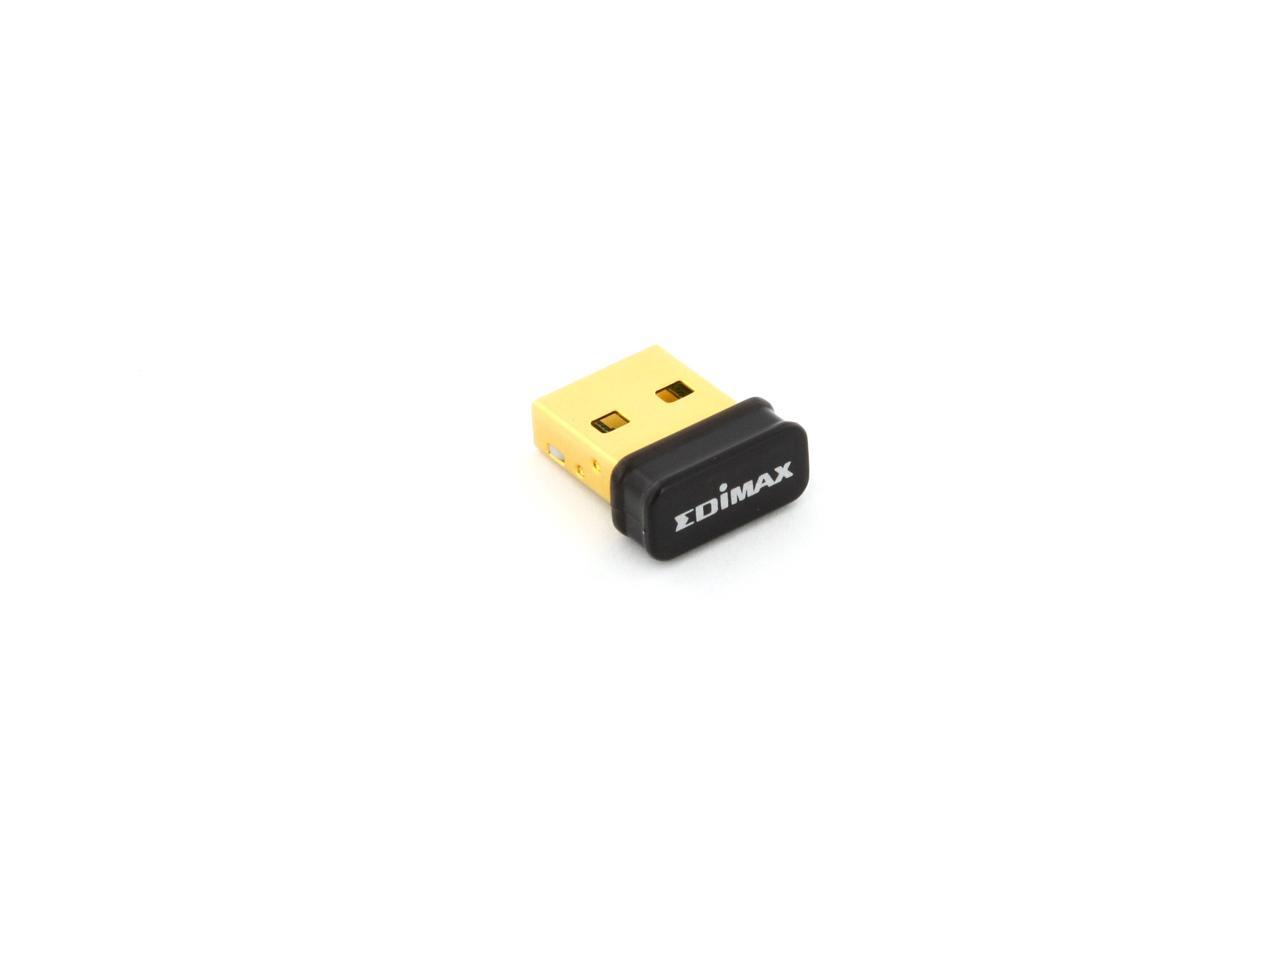 Nano Size New Edimax EW-7811Un 150Mbps 11n Wi-Fi USB Adapter Windows10 Mac OS 